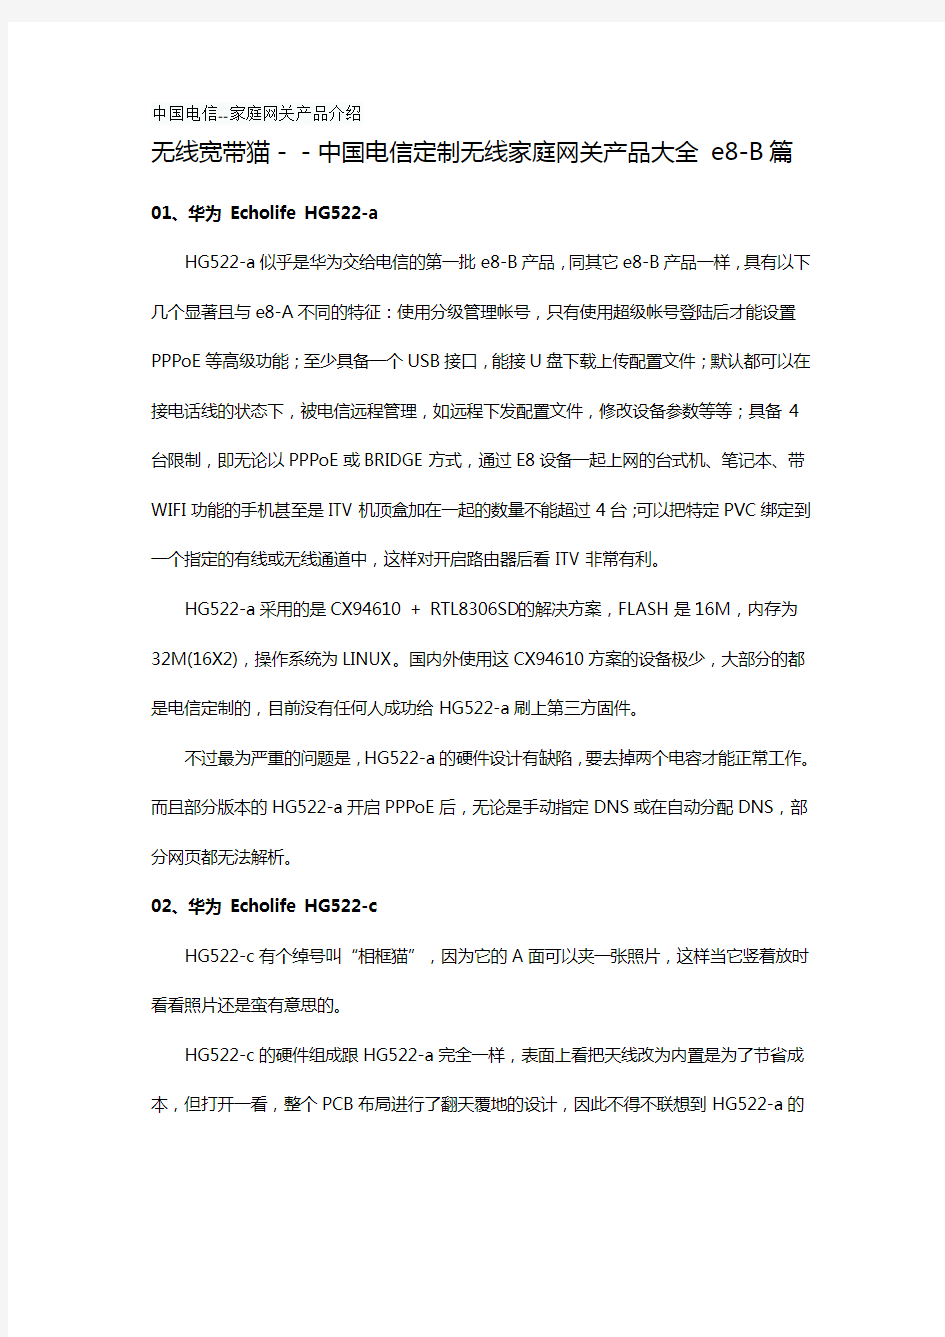 2020年(产品管理)中国电信家庭网关产品介绍